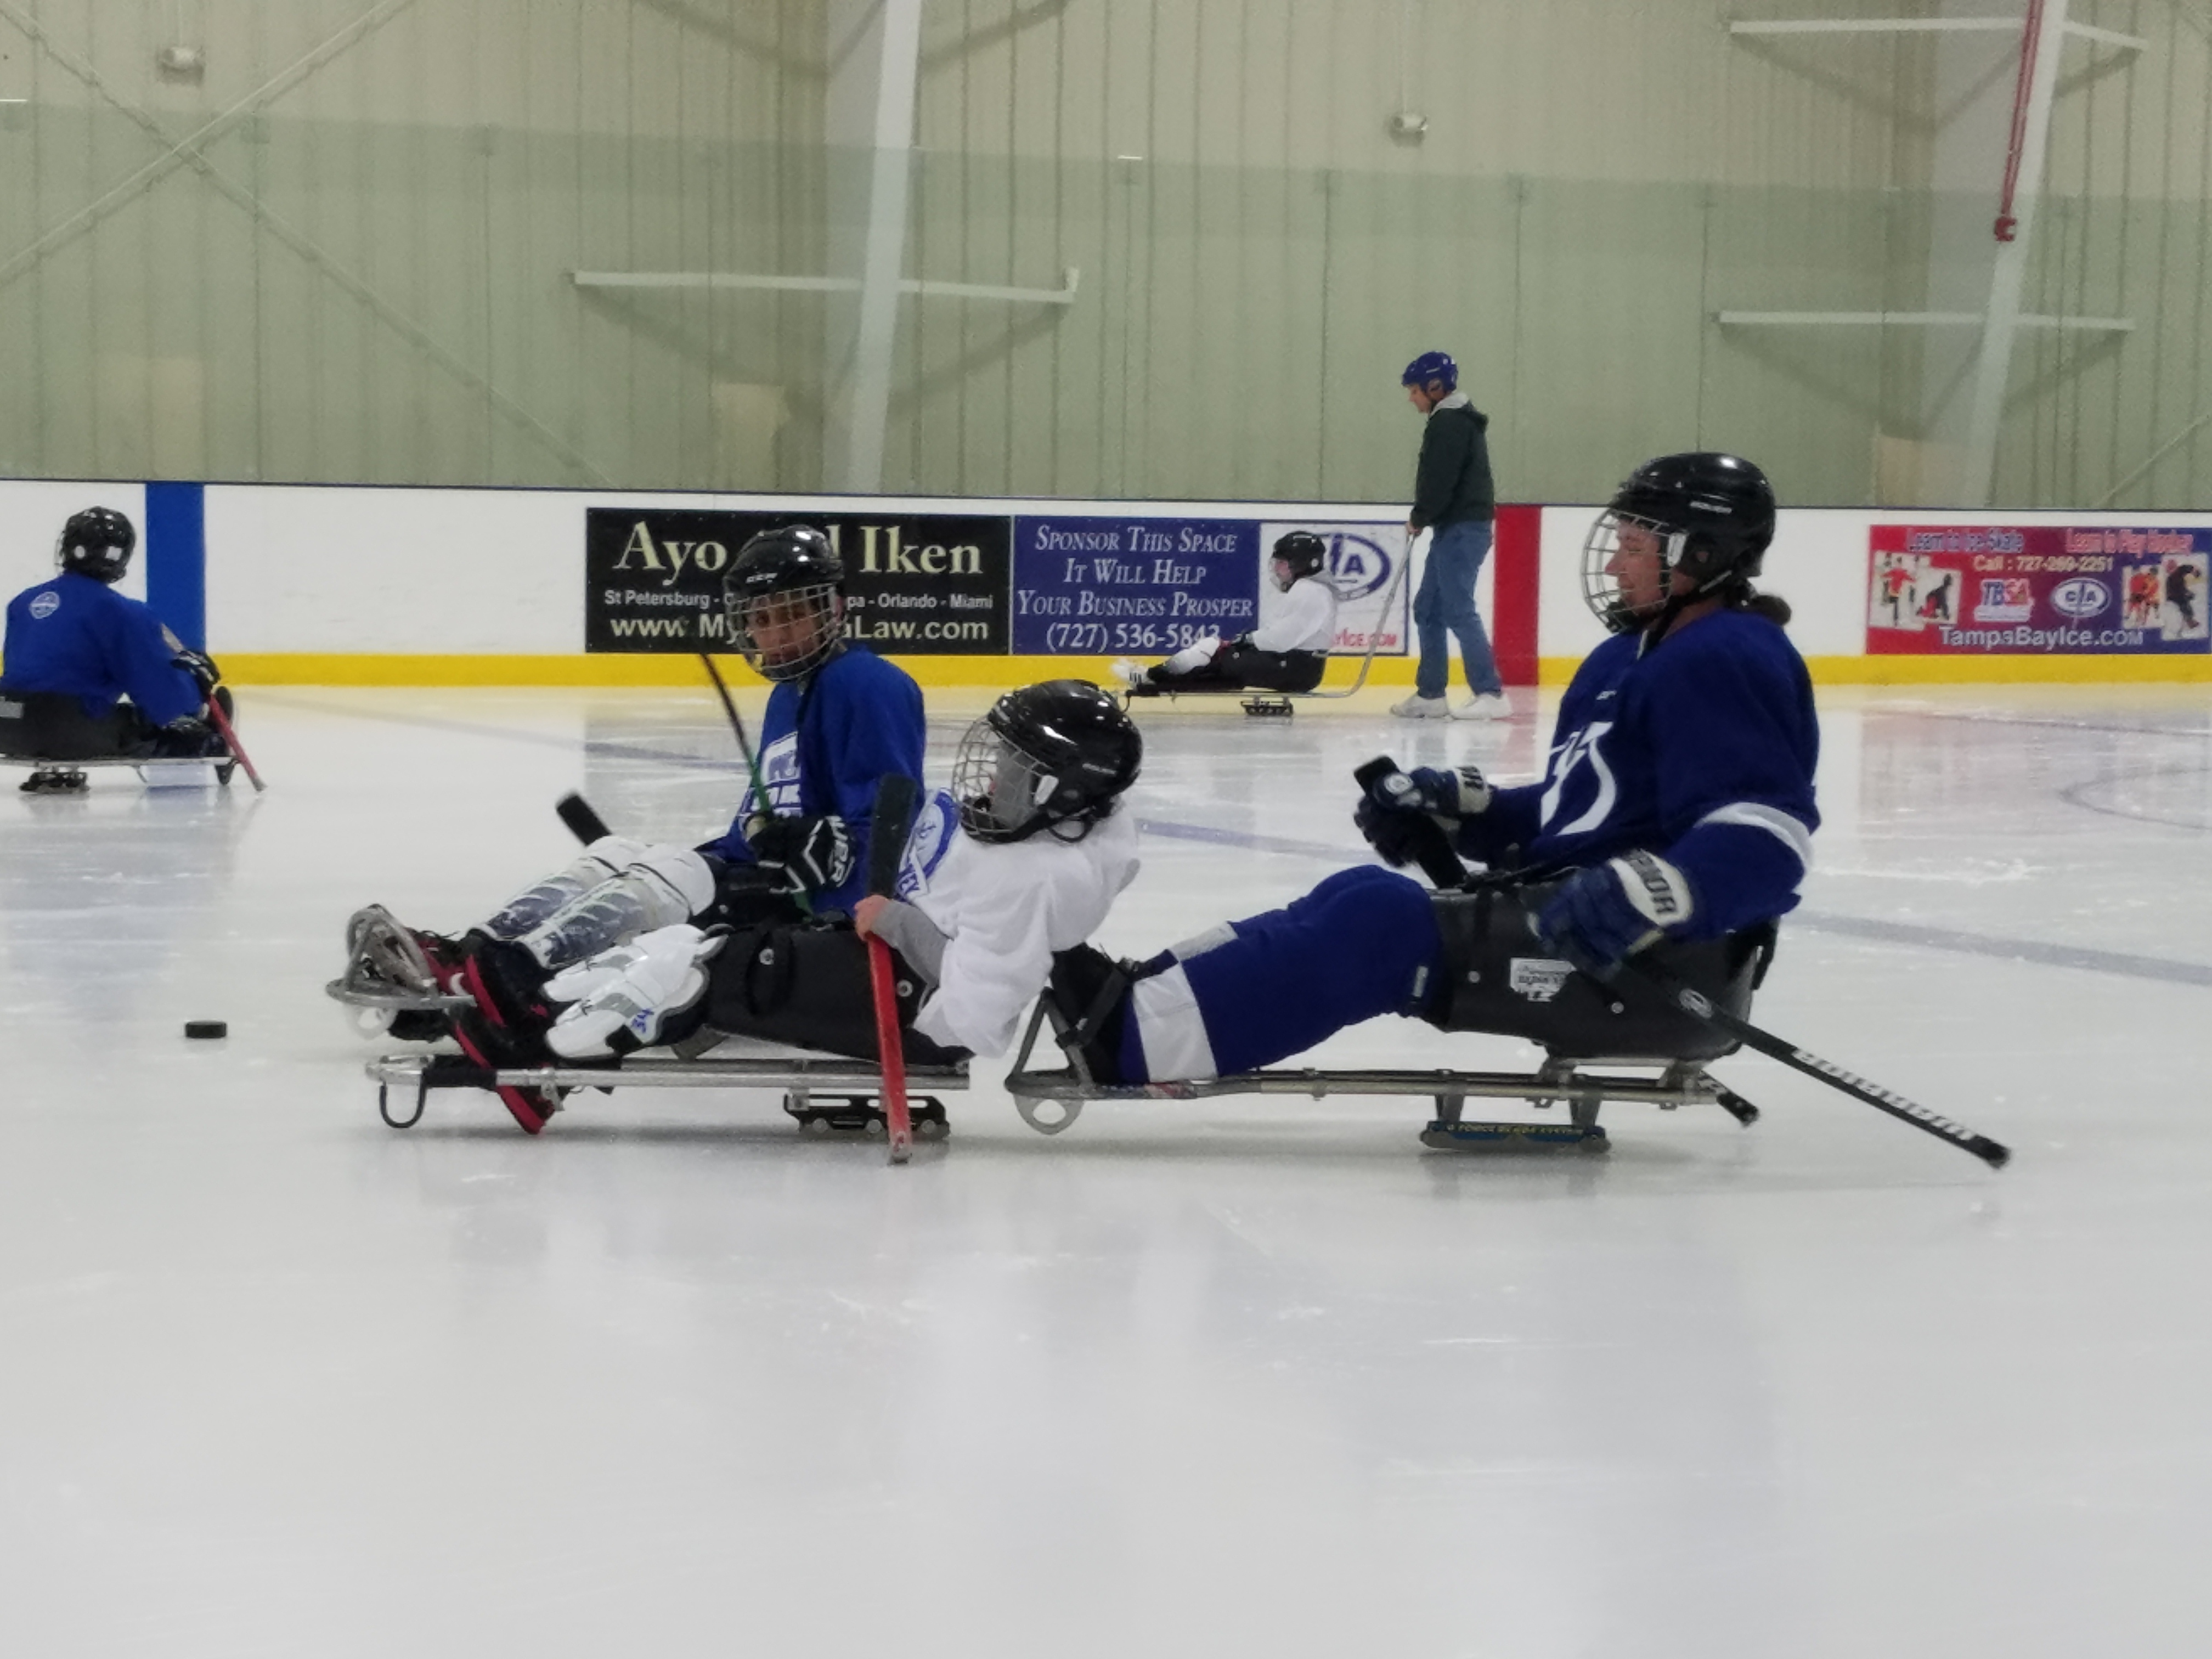 19-20-sled-hockey